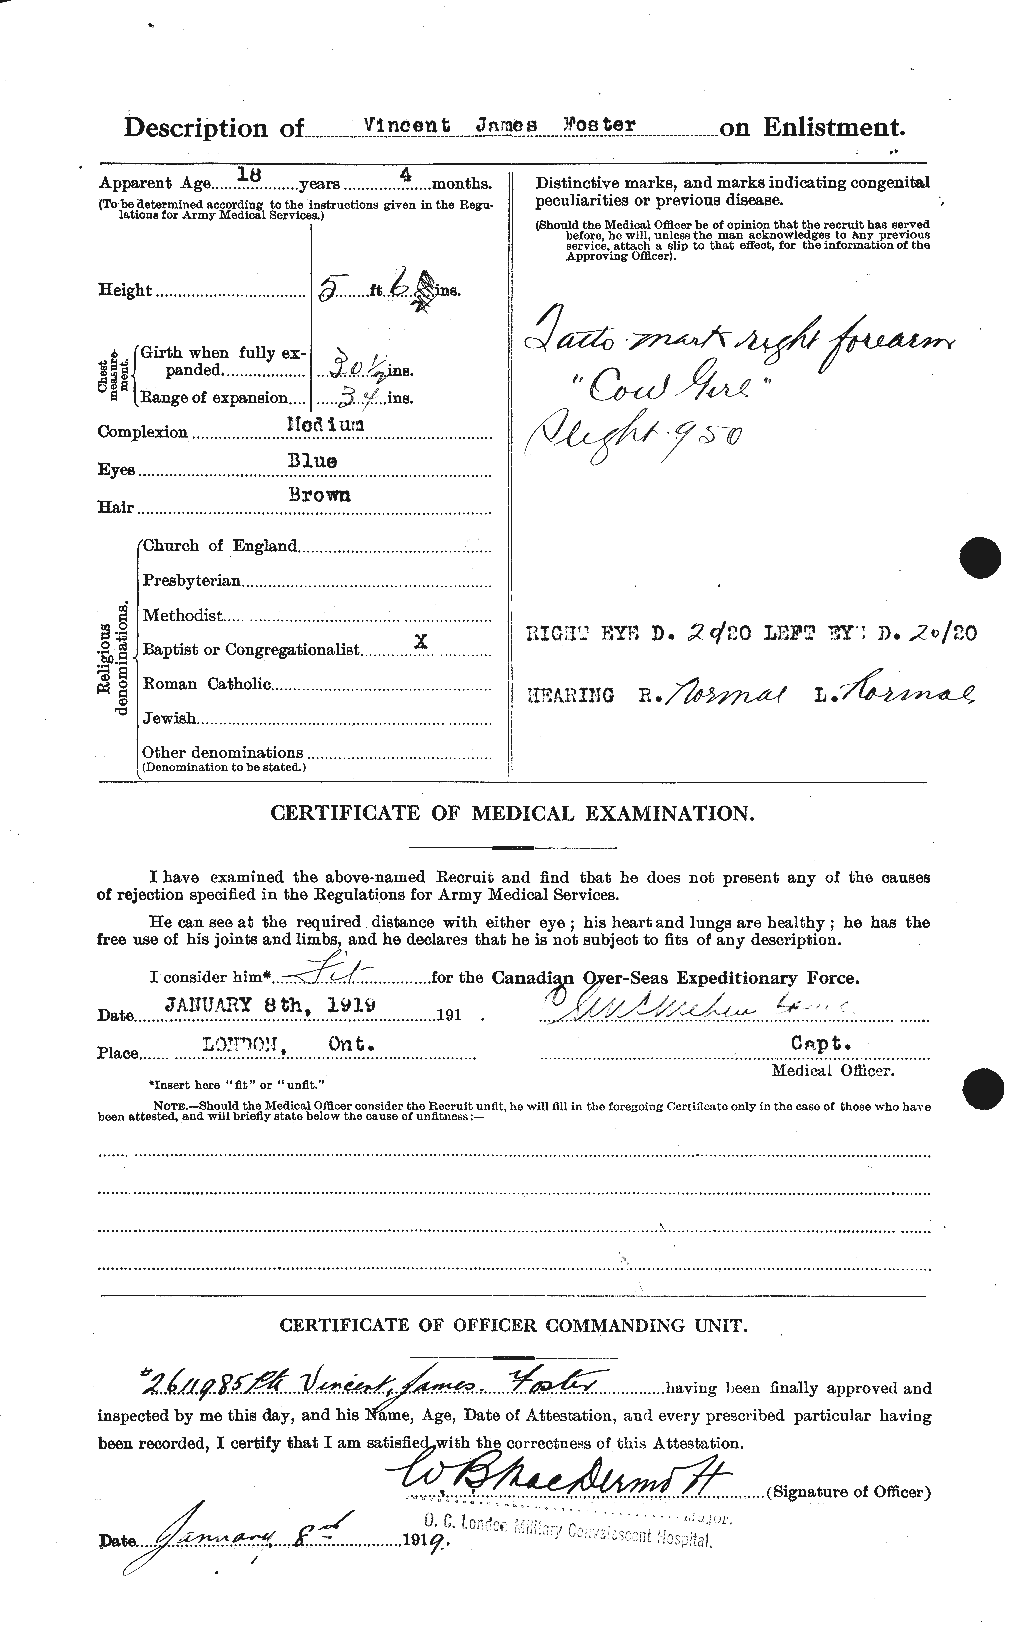 Dossiers du Personnel de la Première Guerre mondiale - CEC 335249b